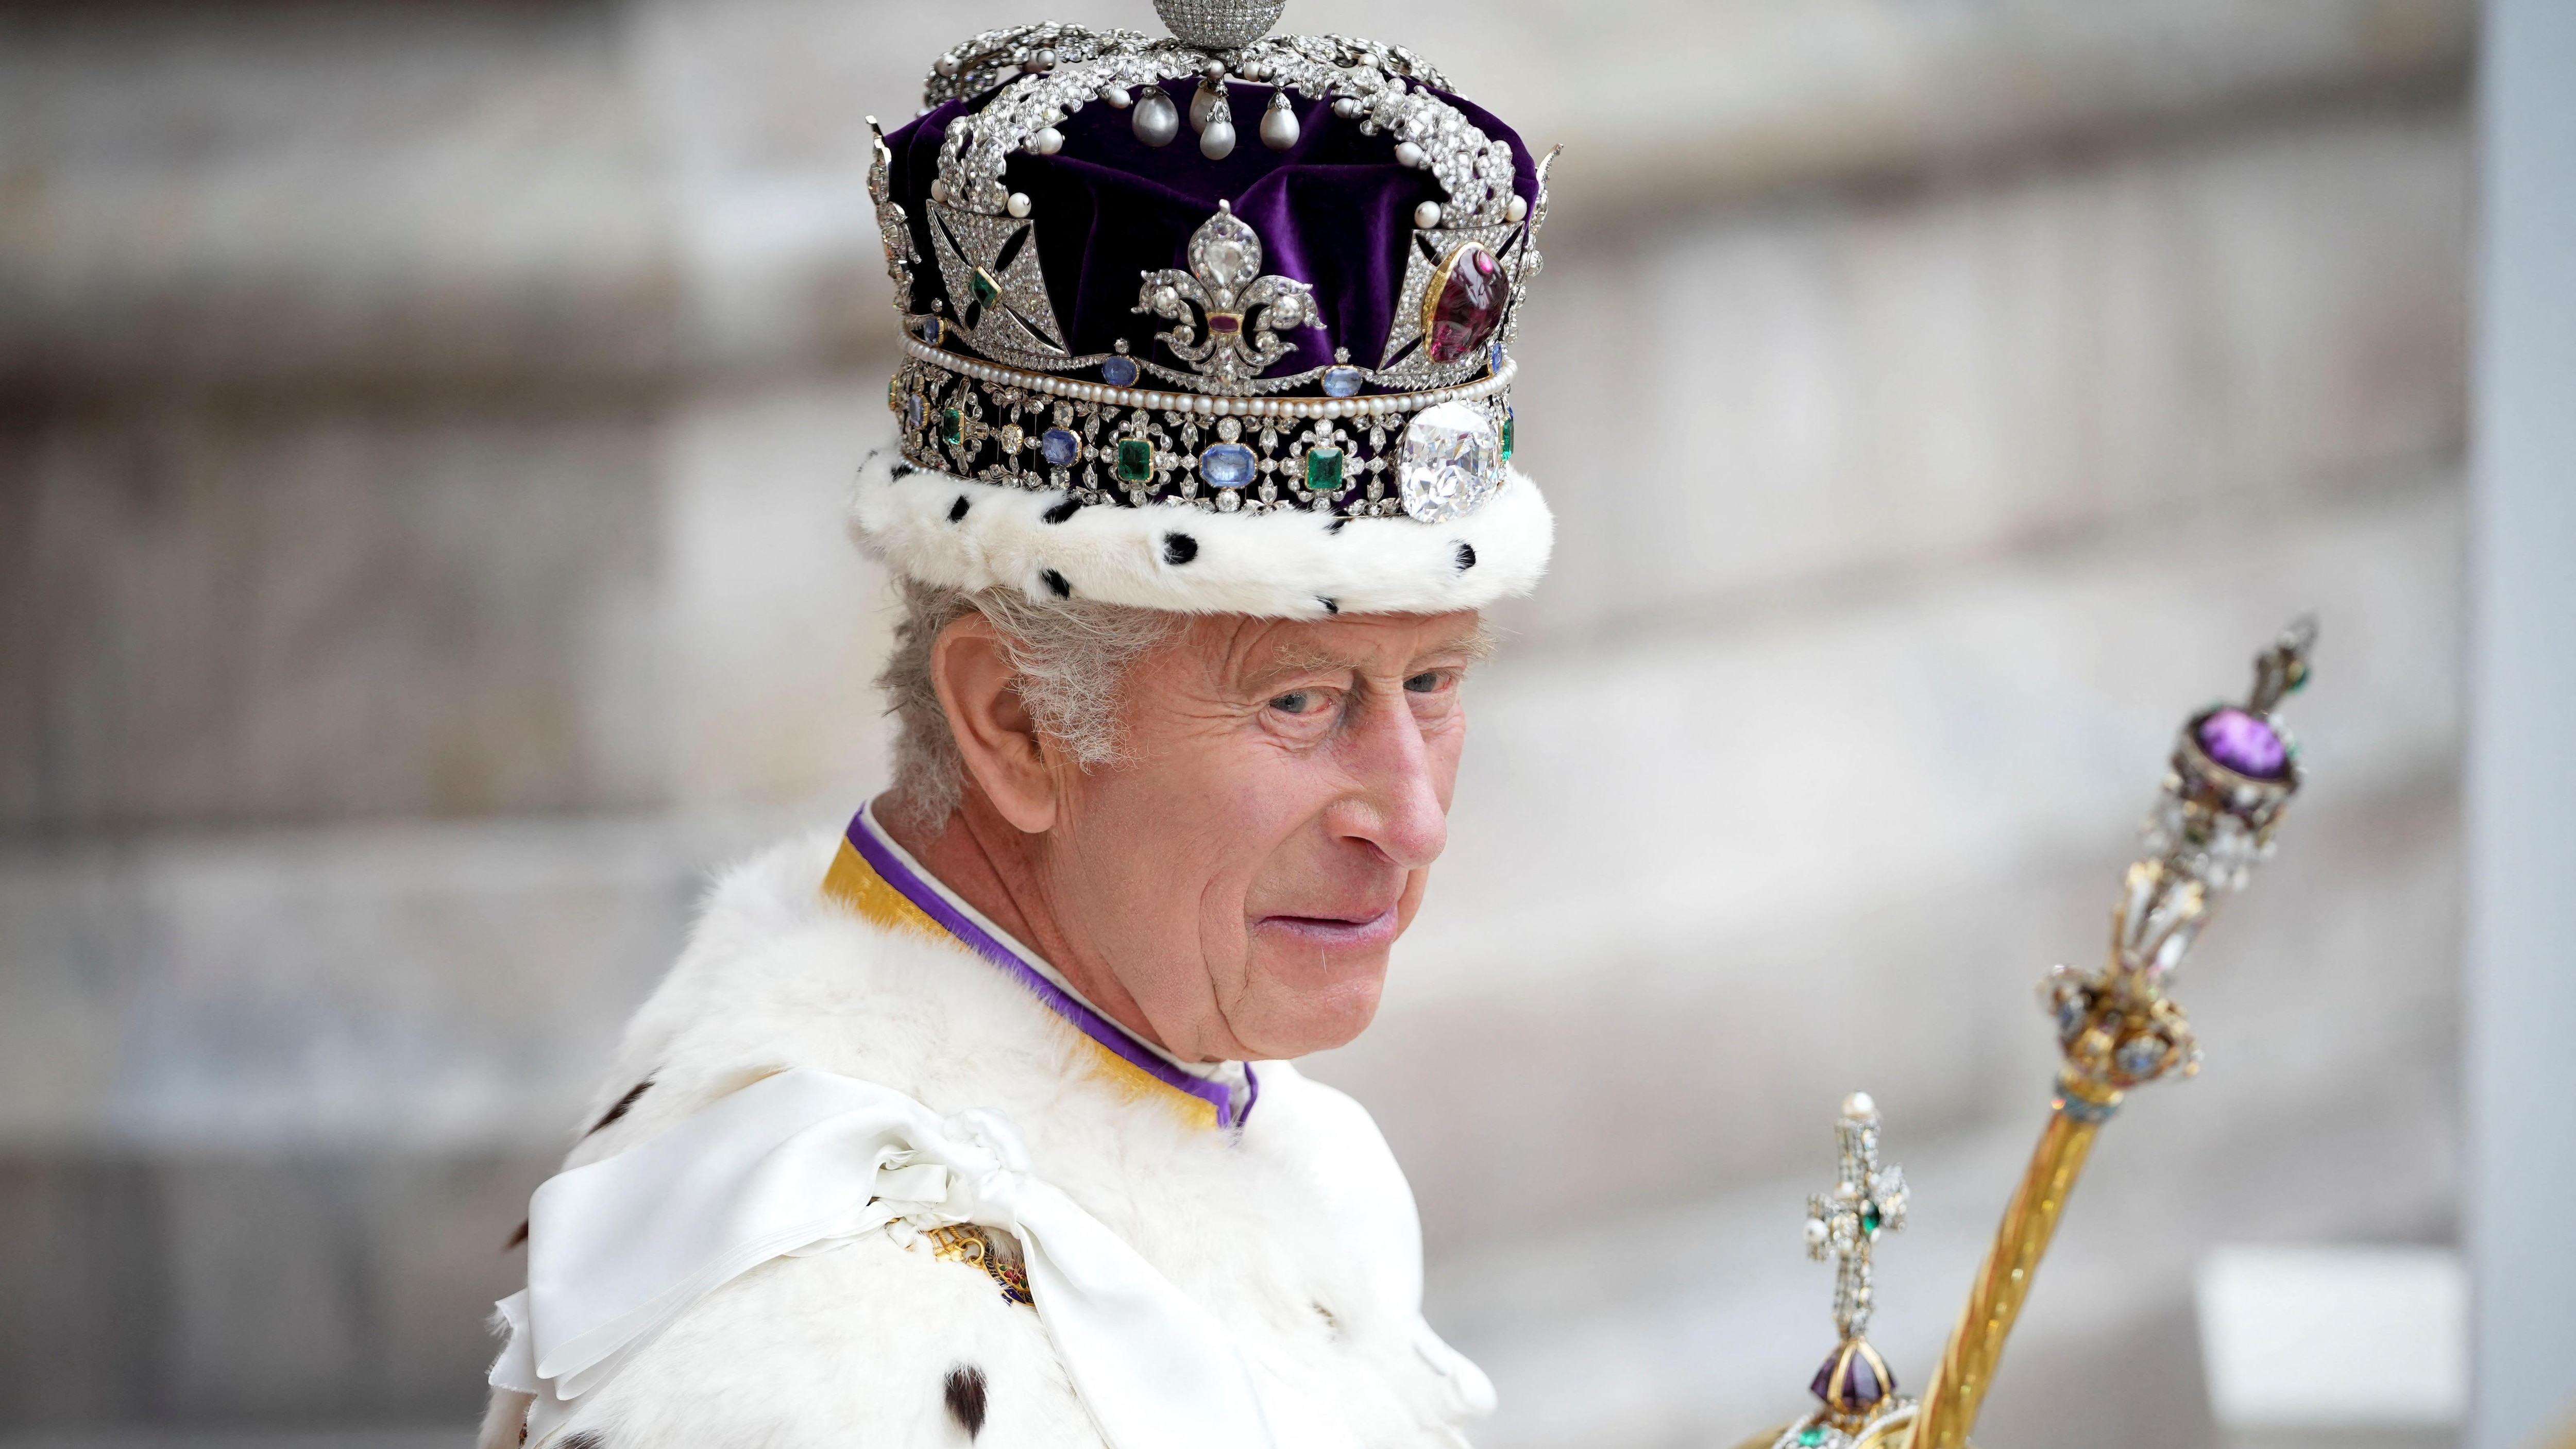 Le roi Charles III officiellement couronné : les faits saillants